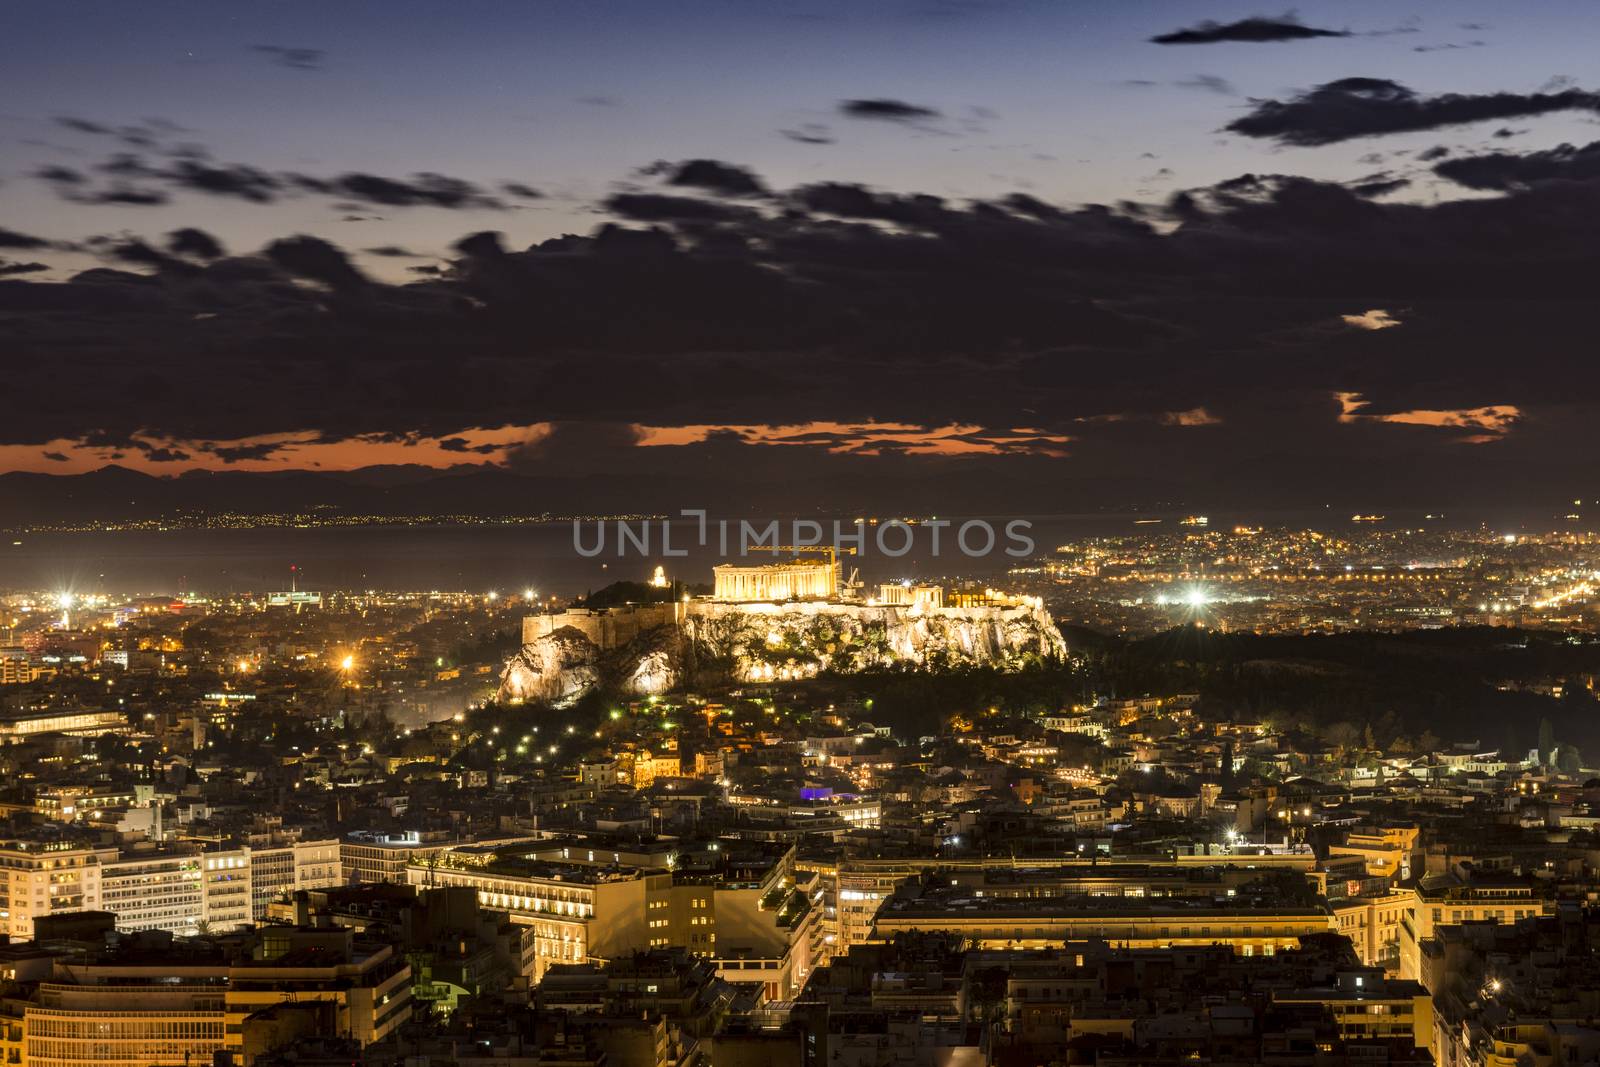 acropolis of athens at night by vangelis